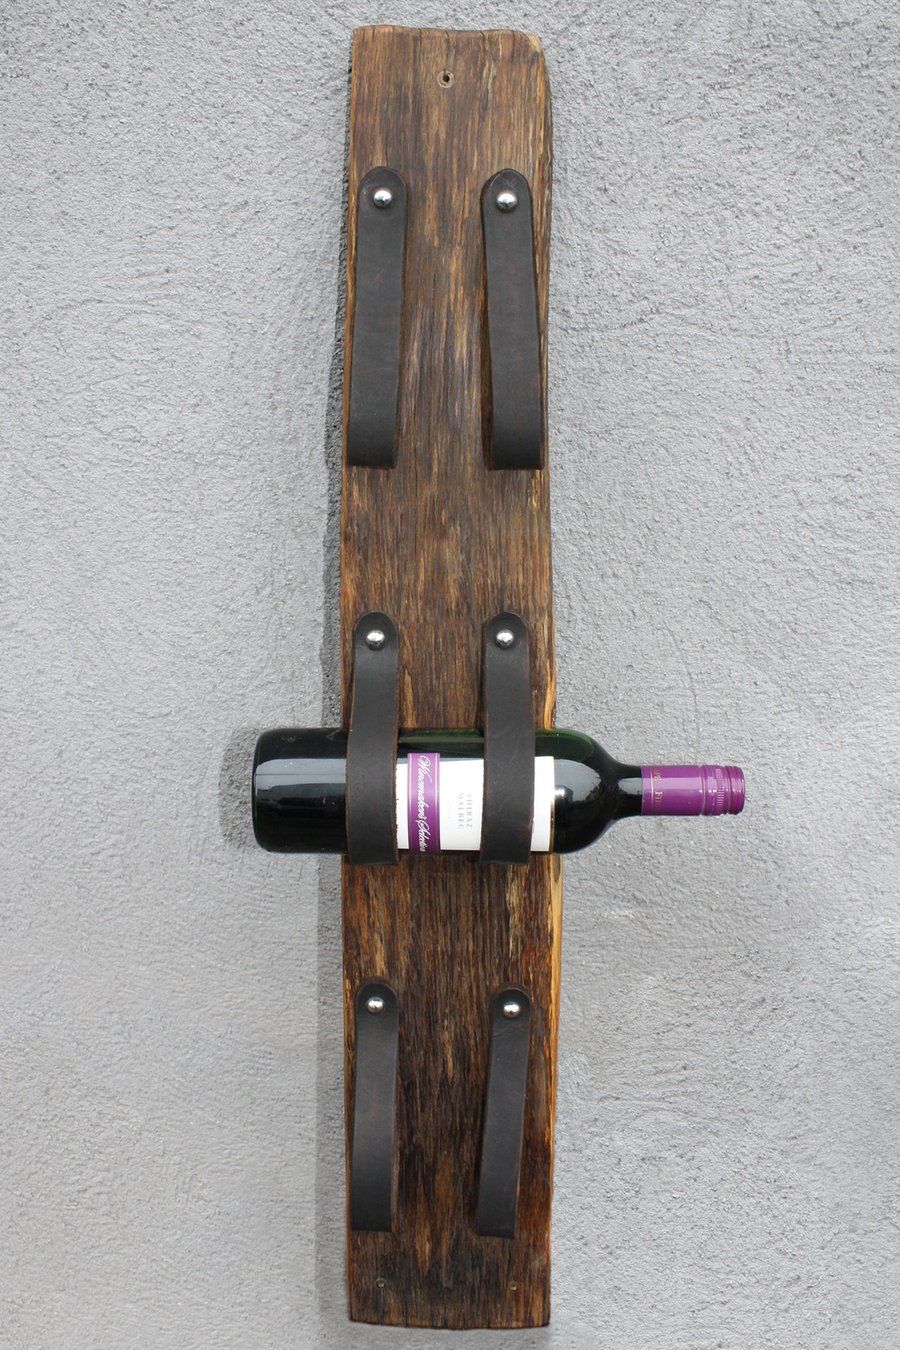 Wall Mounted Wine Rack